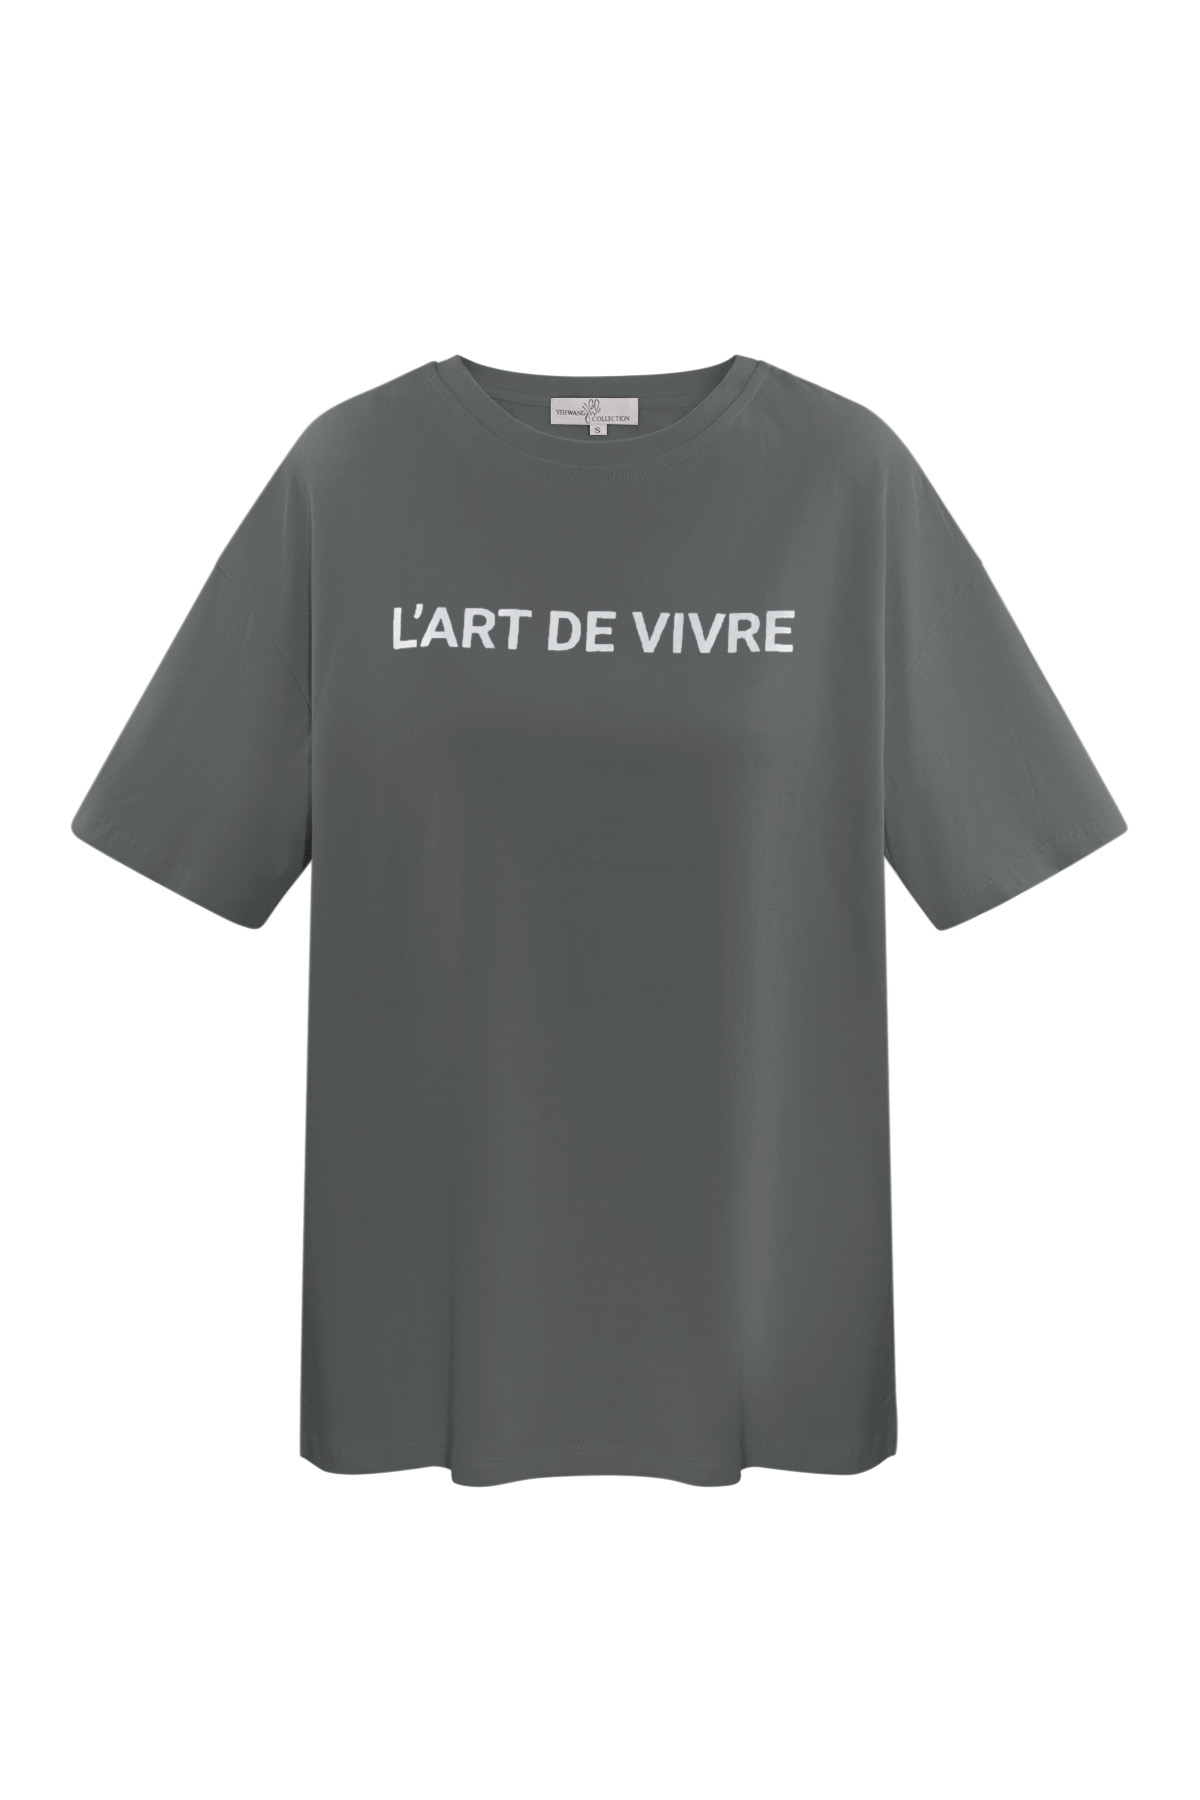 T-shirt l'art de vivre - gris argenté